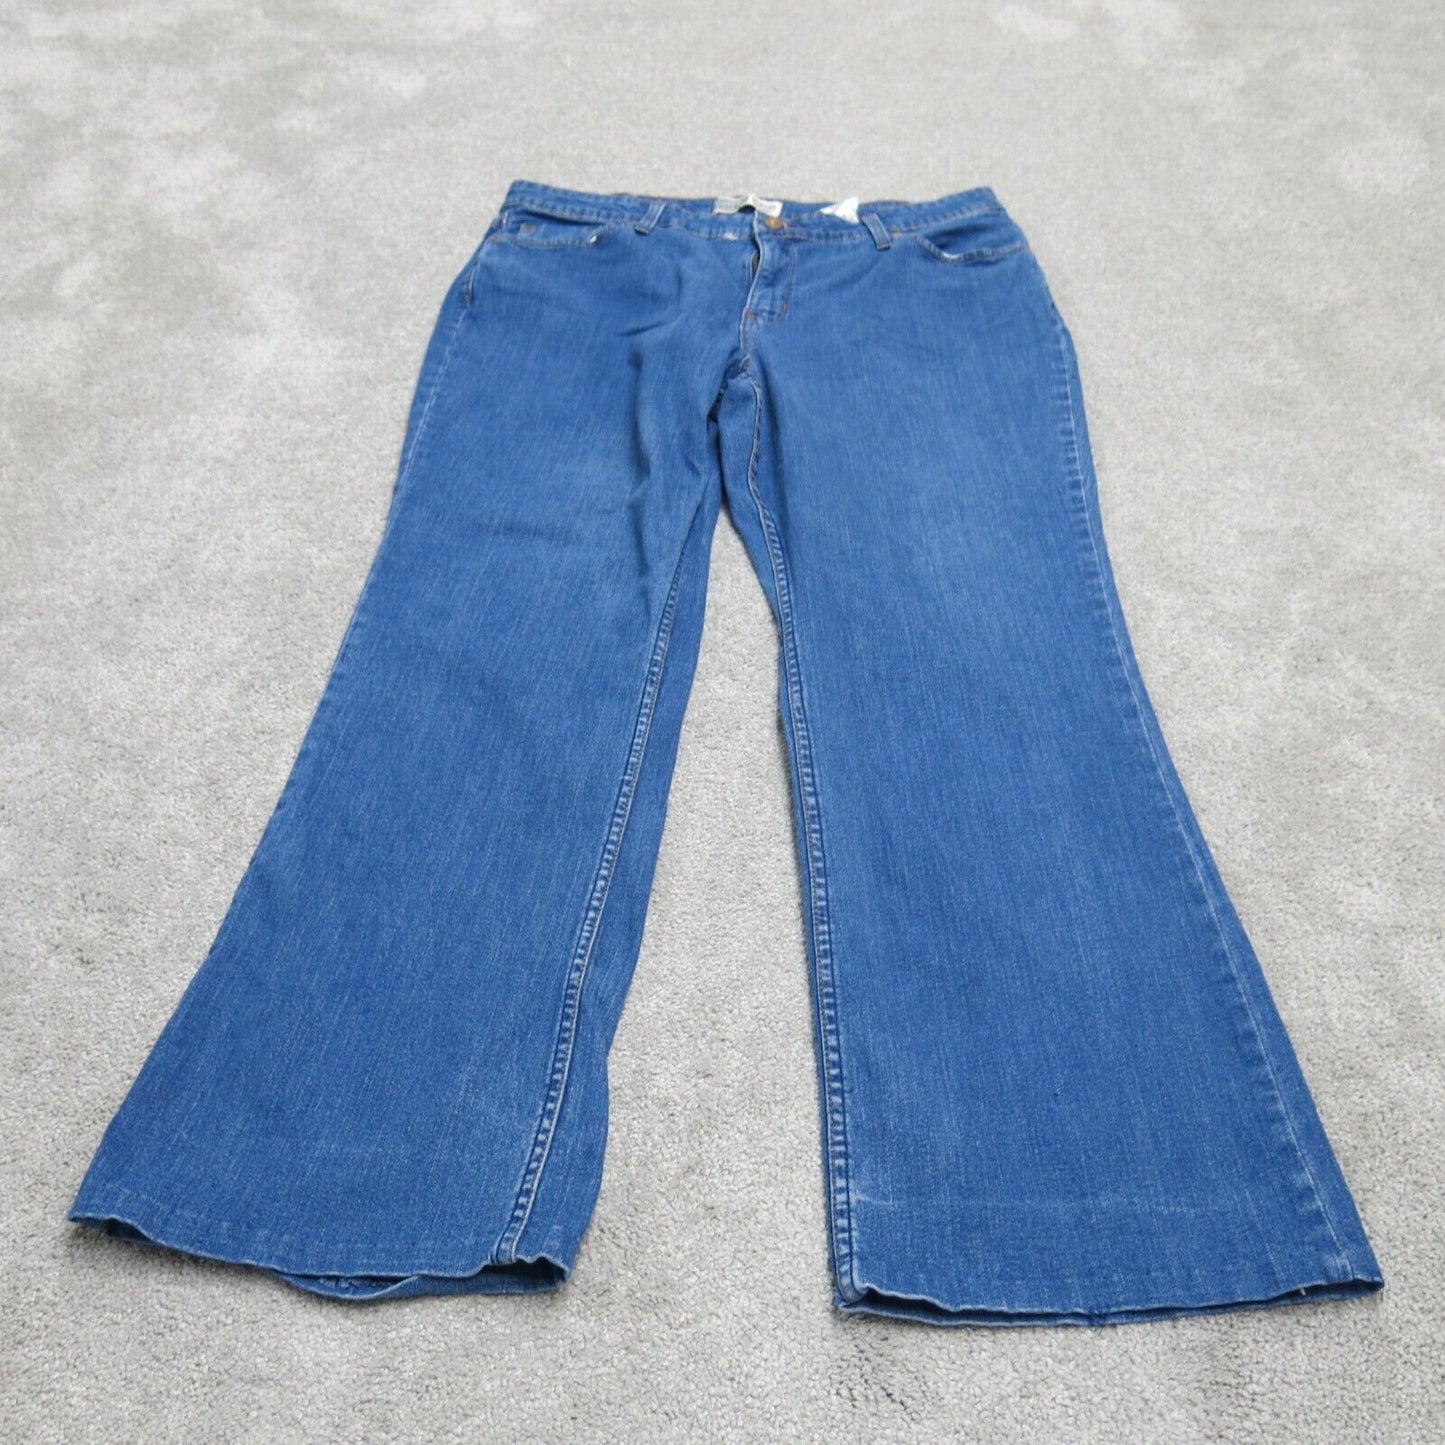 Signature By Levis Mens Boot Cut Jeans Denim Mid Rise Cotton Blue Misses 16 Long